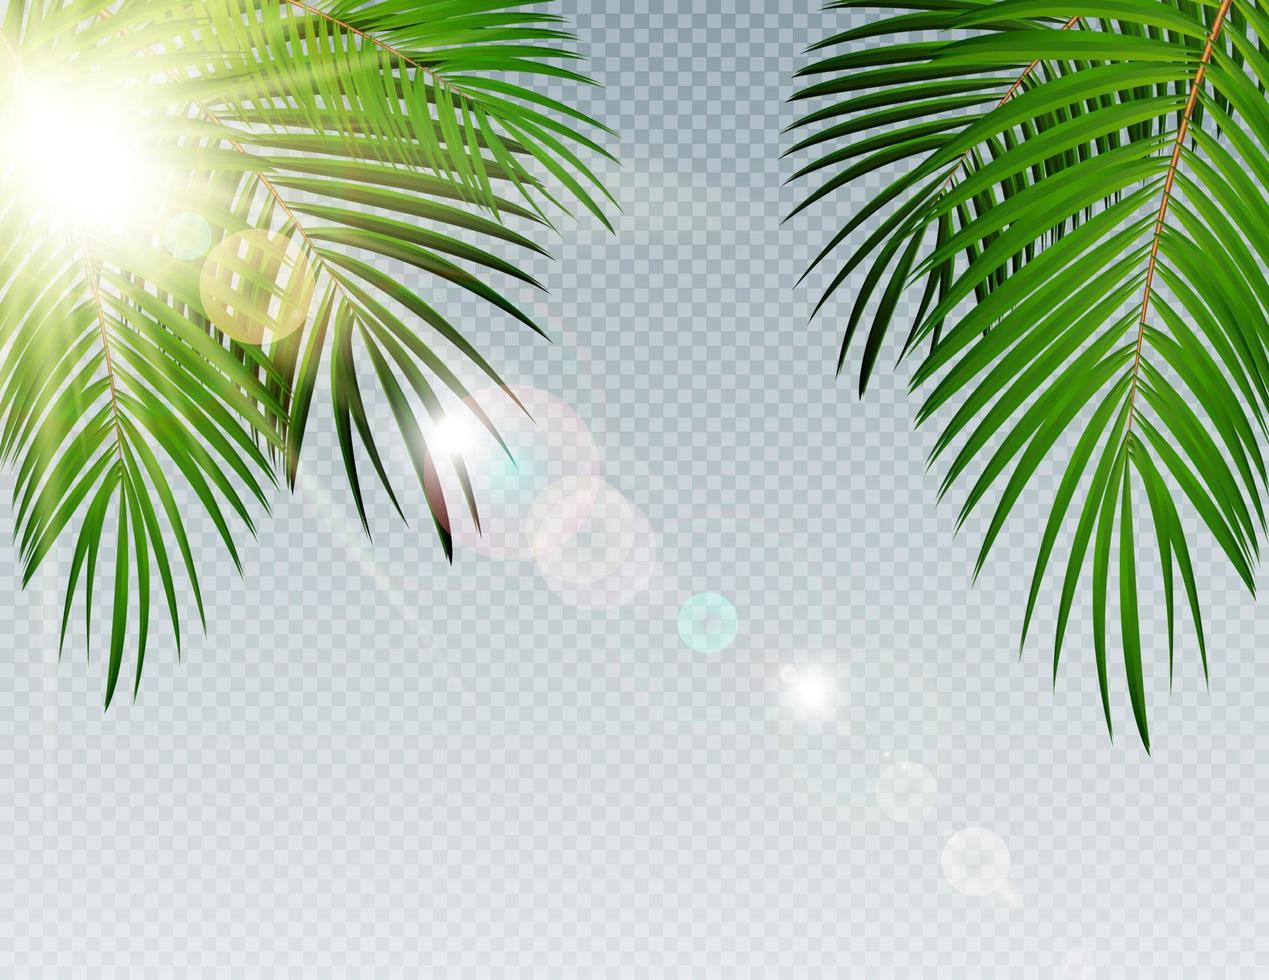 Feuille de palmier de l'heure d'été avec sun burnst sur fond transparent vector illustration